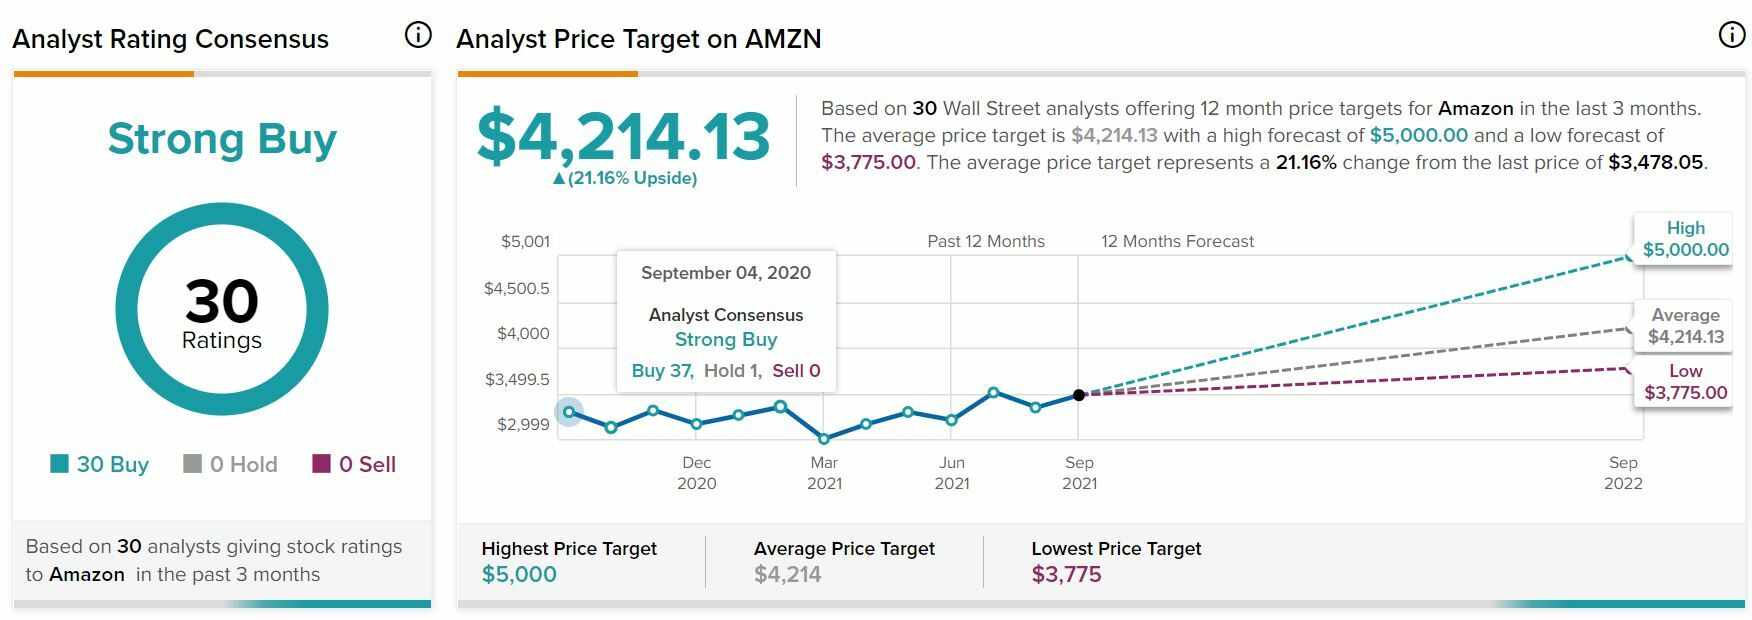 Amazon consenso del mercado sobre el valor 